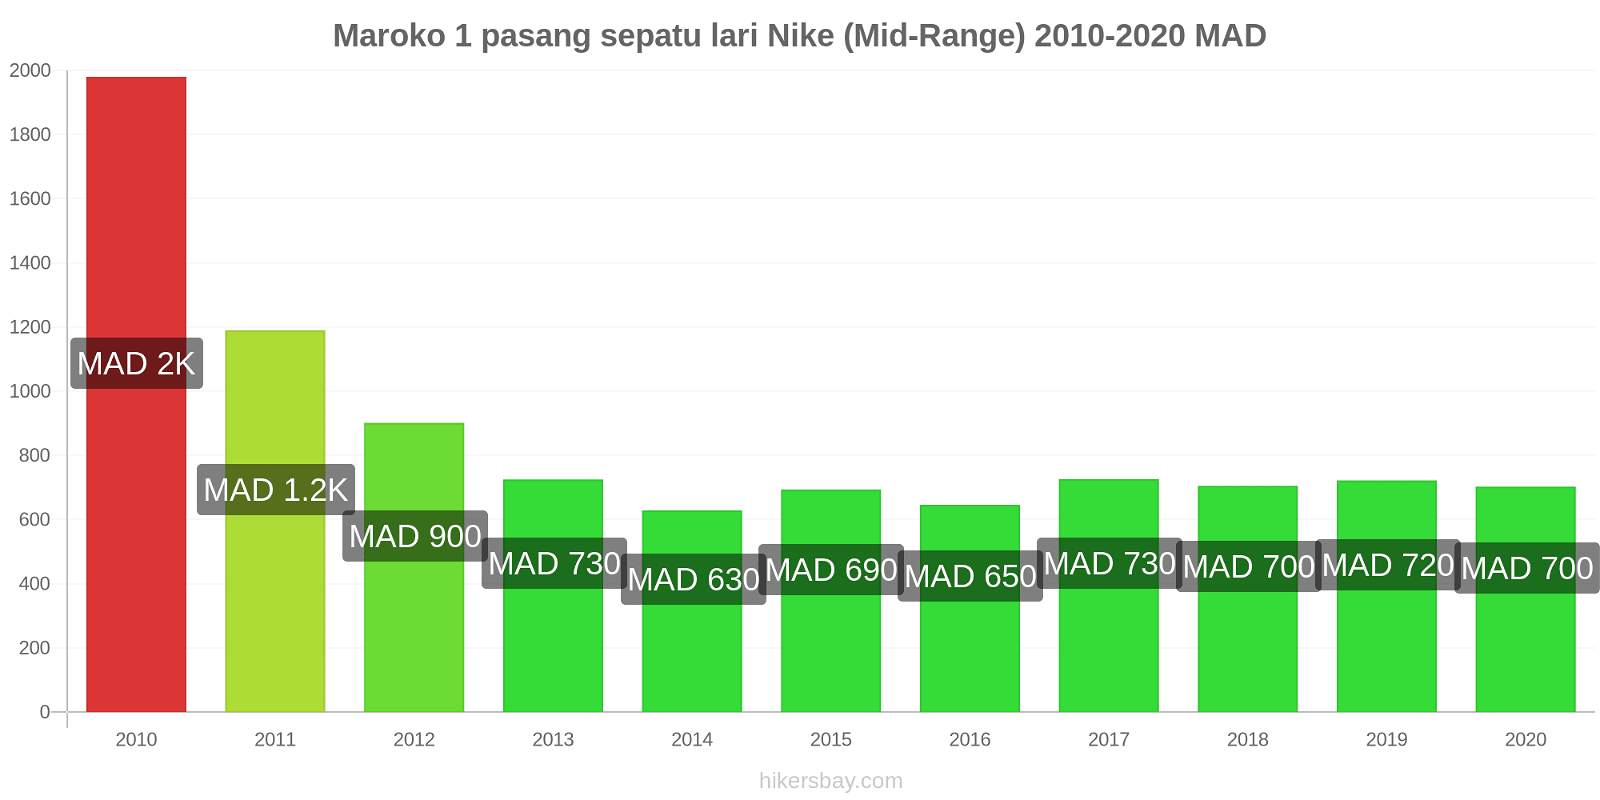 Maroko perubahan harga 1 pasang sepatu lari Nike (Mid-Range) hikersbay.com